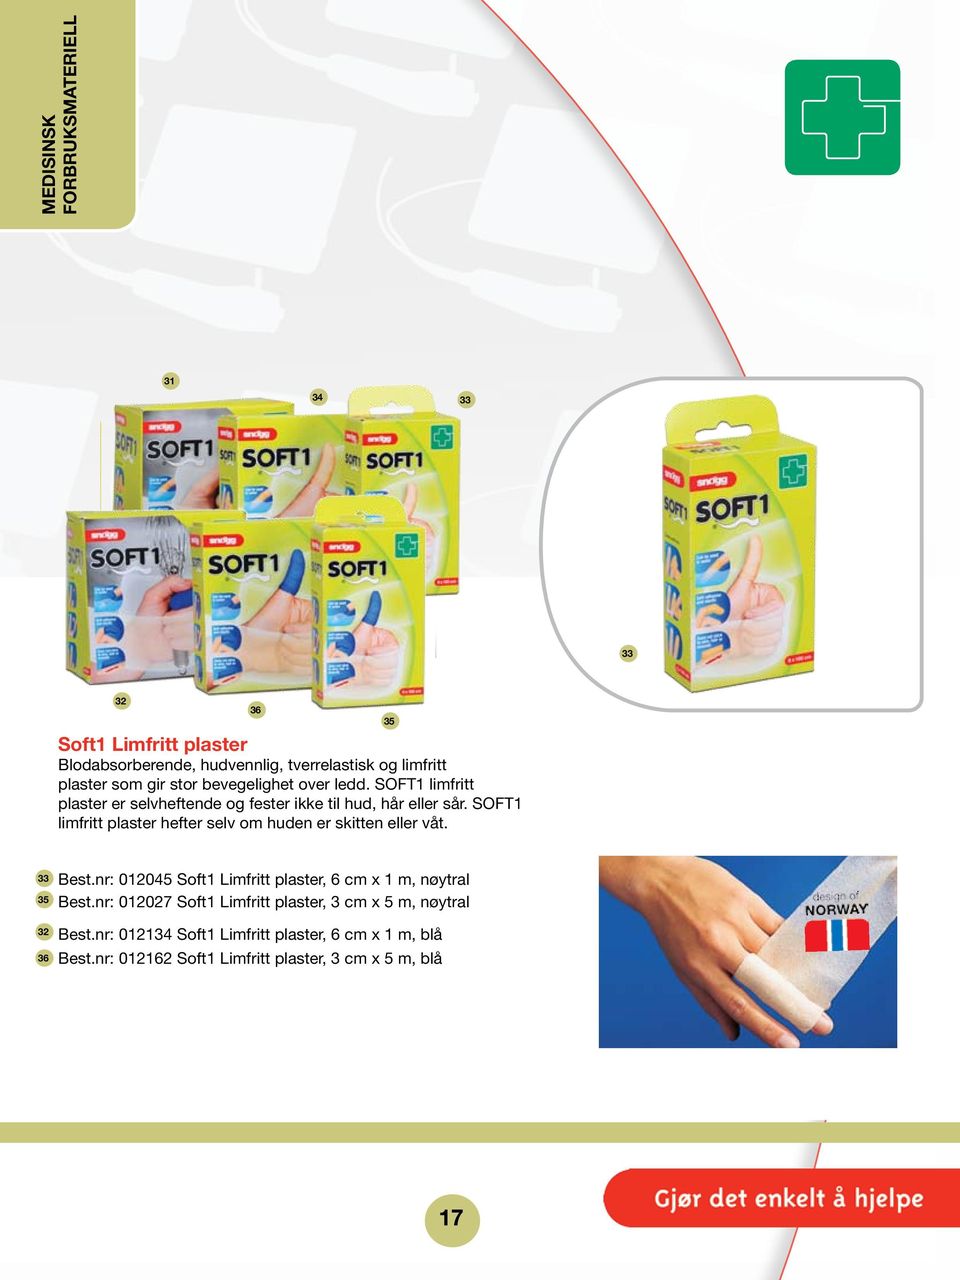 SOFT1 limfritt plaster hefter selv om huden er skitten eller våt. 35 33 35 32 36 Best.